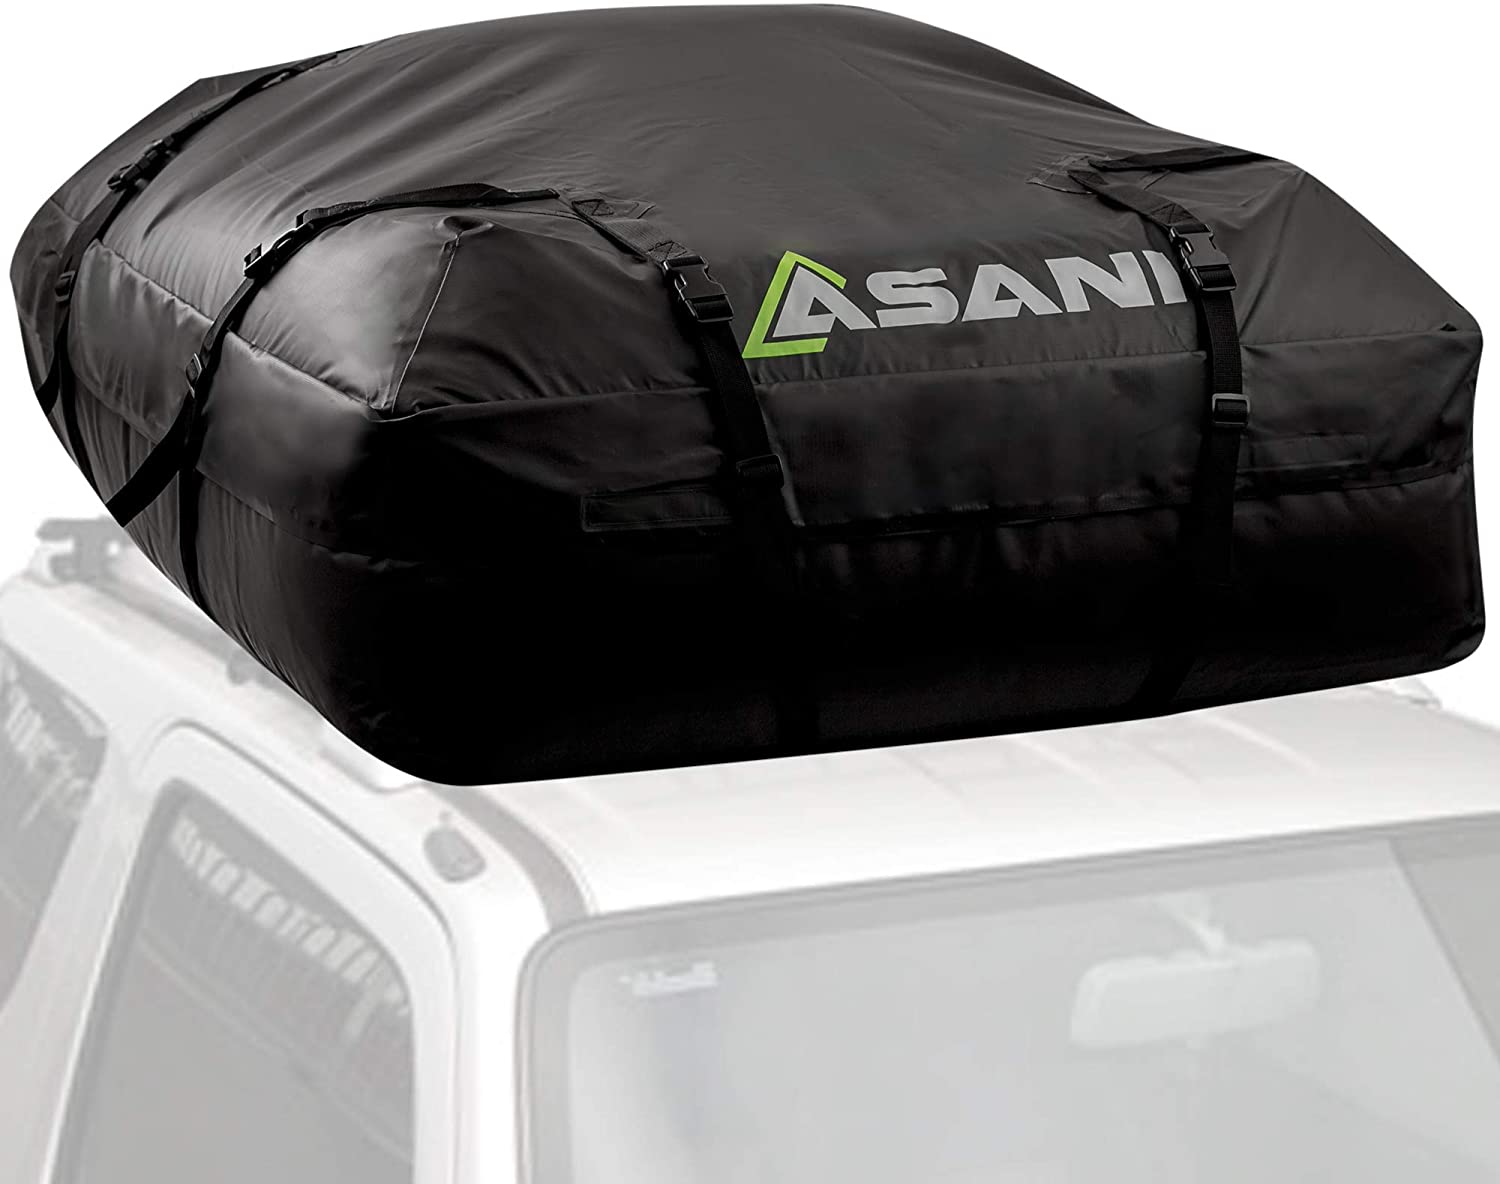 Asani Roof Top Cargo Bag 15 Cubic ft